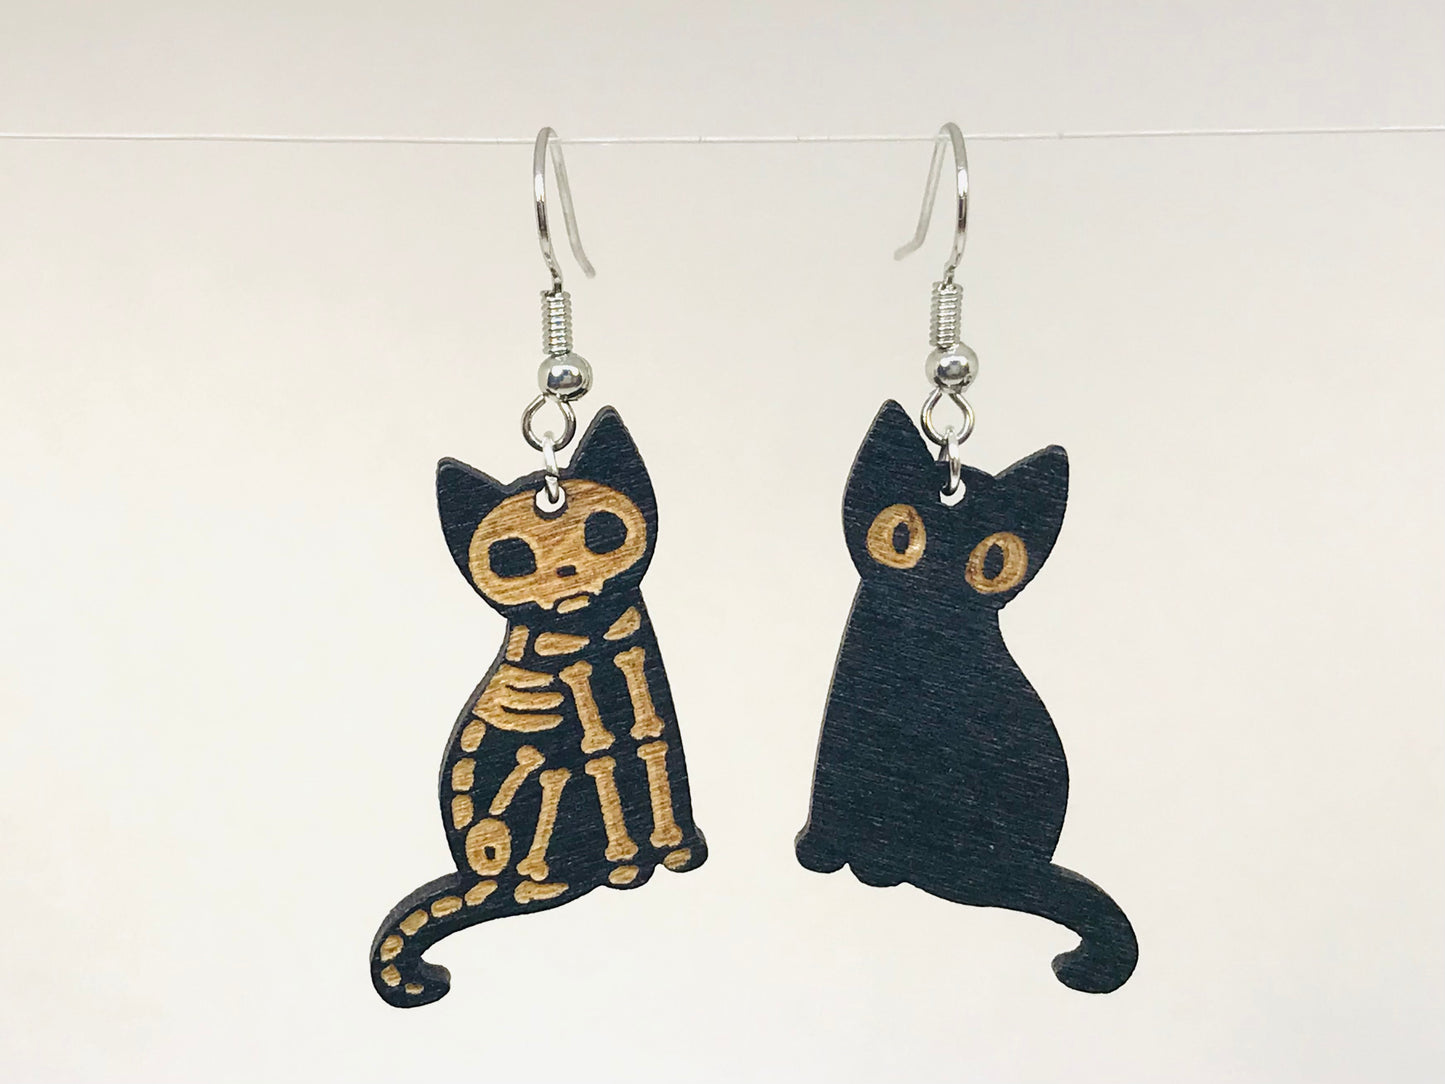 2 Black Cat Wood Engraving Earrings